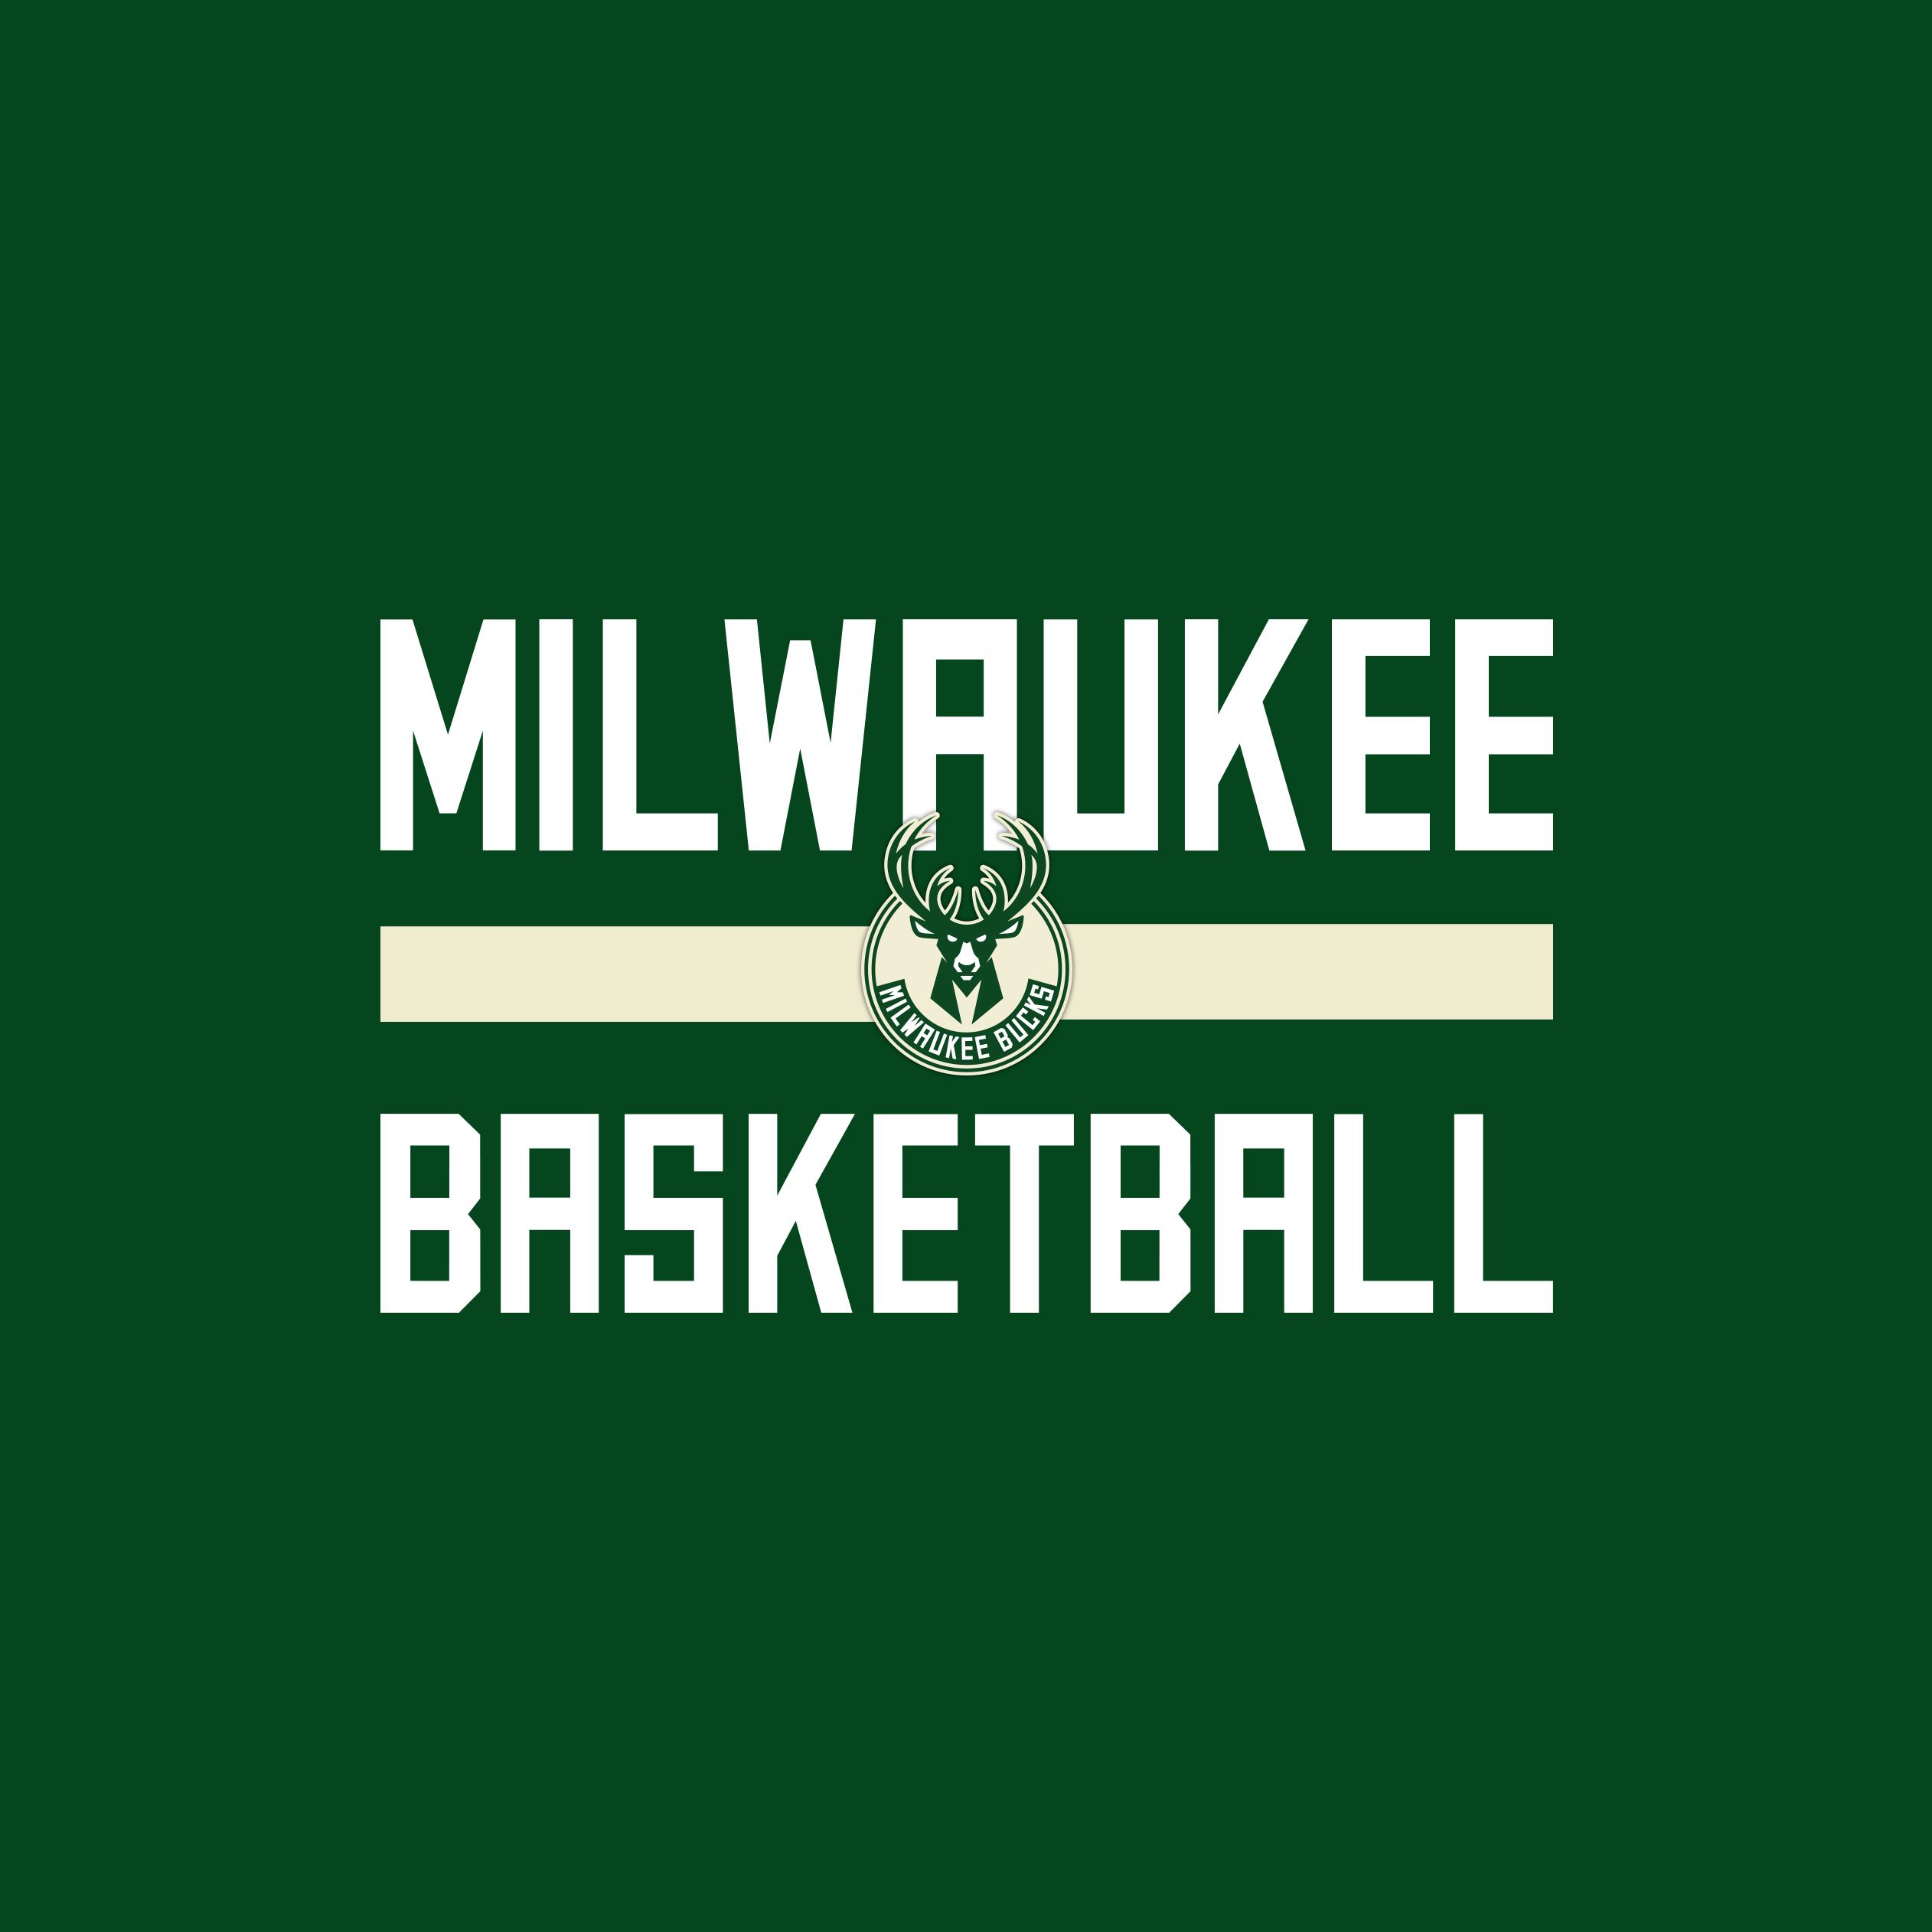 Bucks Background and Wallpaper. Milwaukee Bucks. Milwaukee bucks basketball, Bucks basketball, Milwaukee bucks